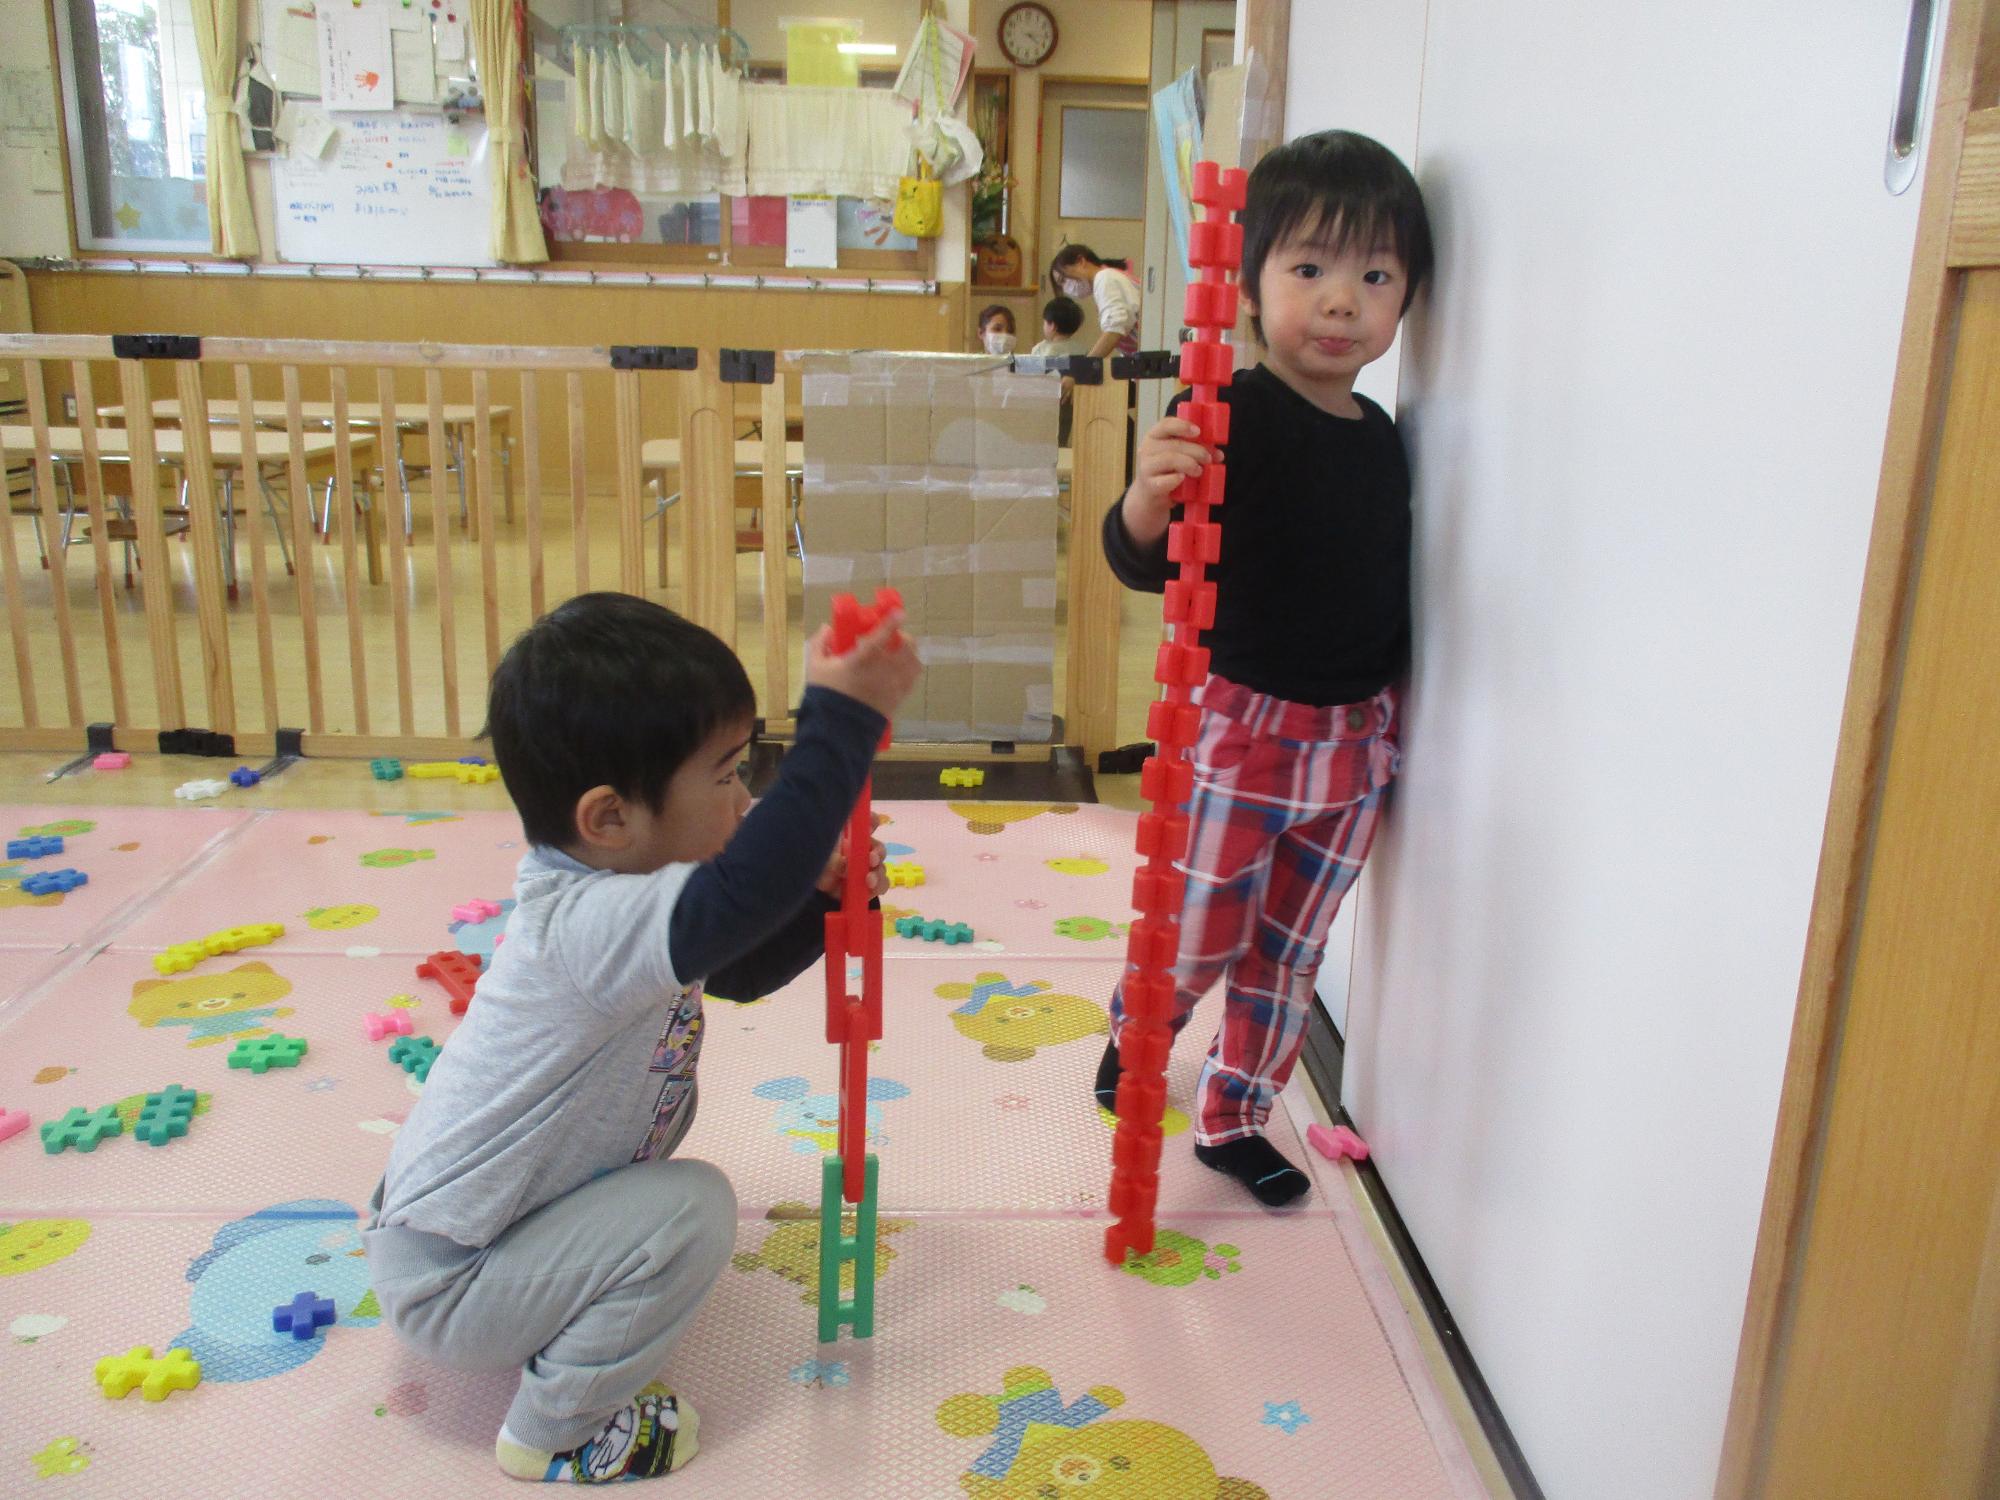 ブロックを高く繋げて遊ぶつぼみ1組の子ども達です。